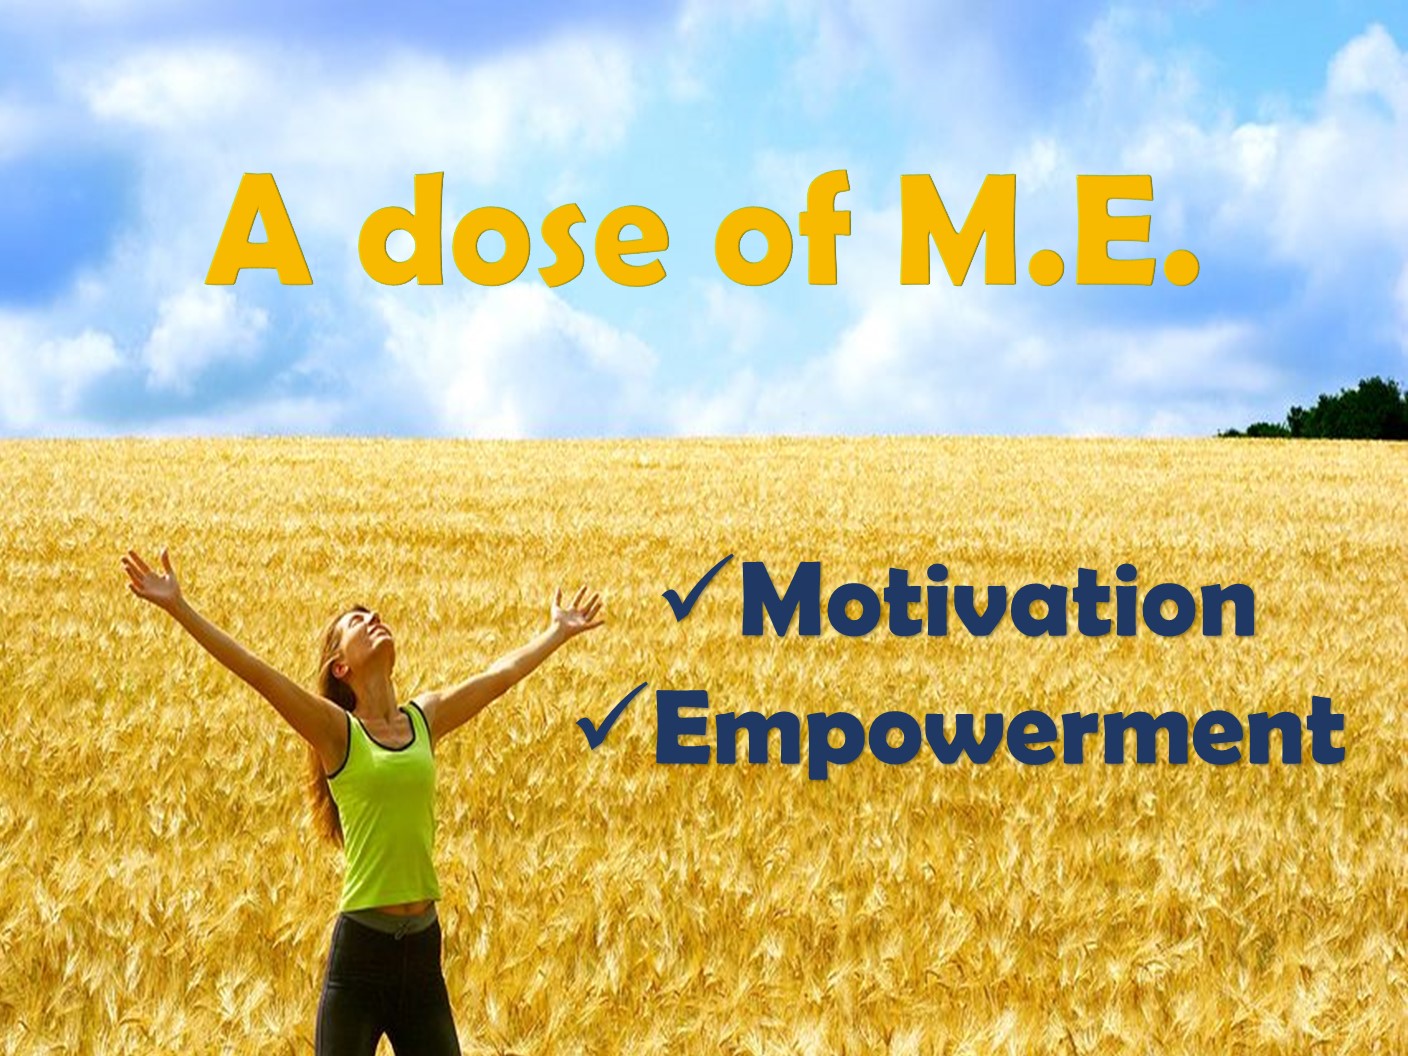 A dose of M.E. Motivation Empowerment